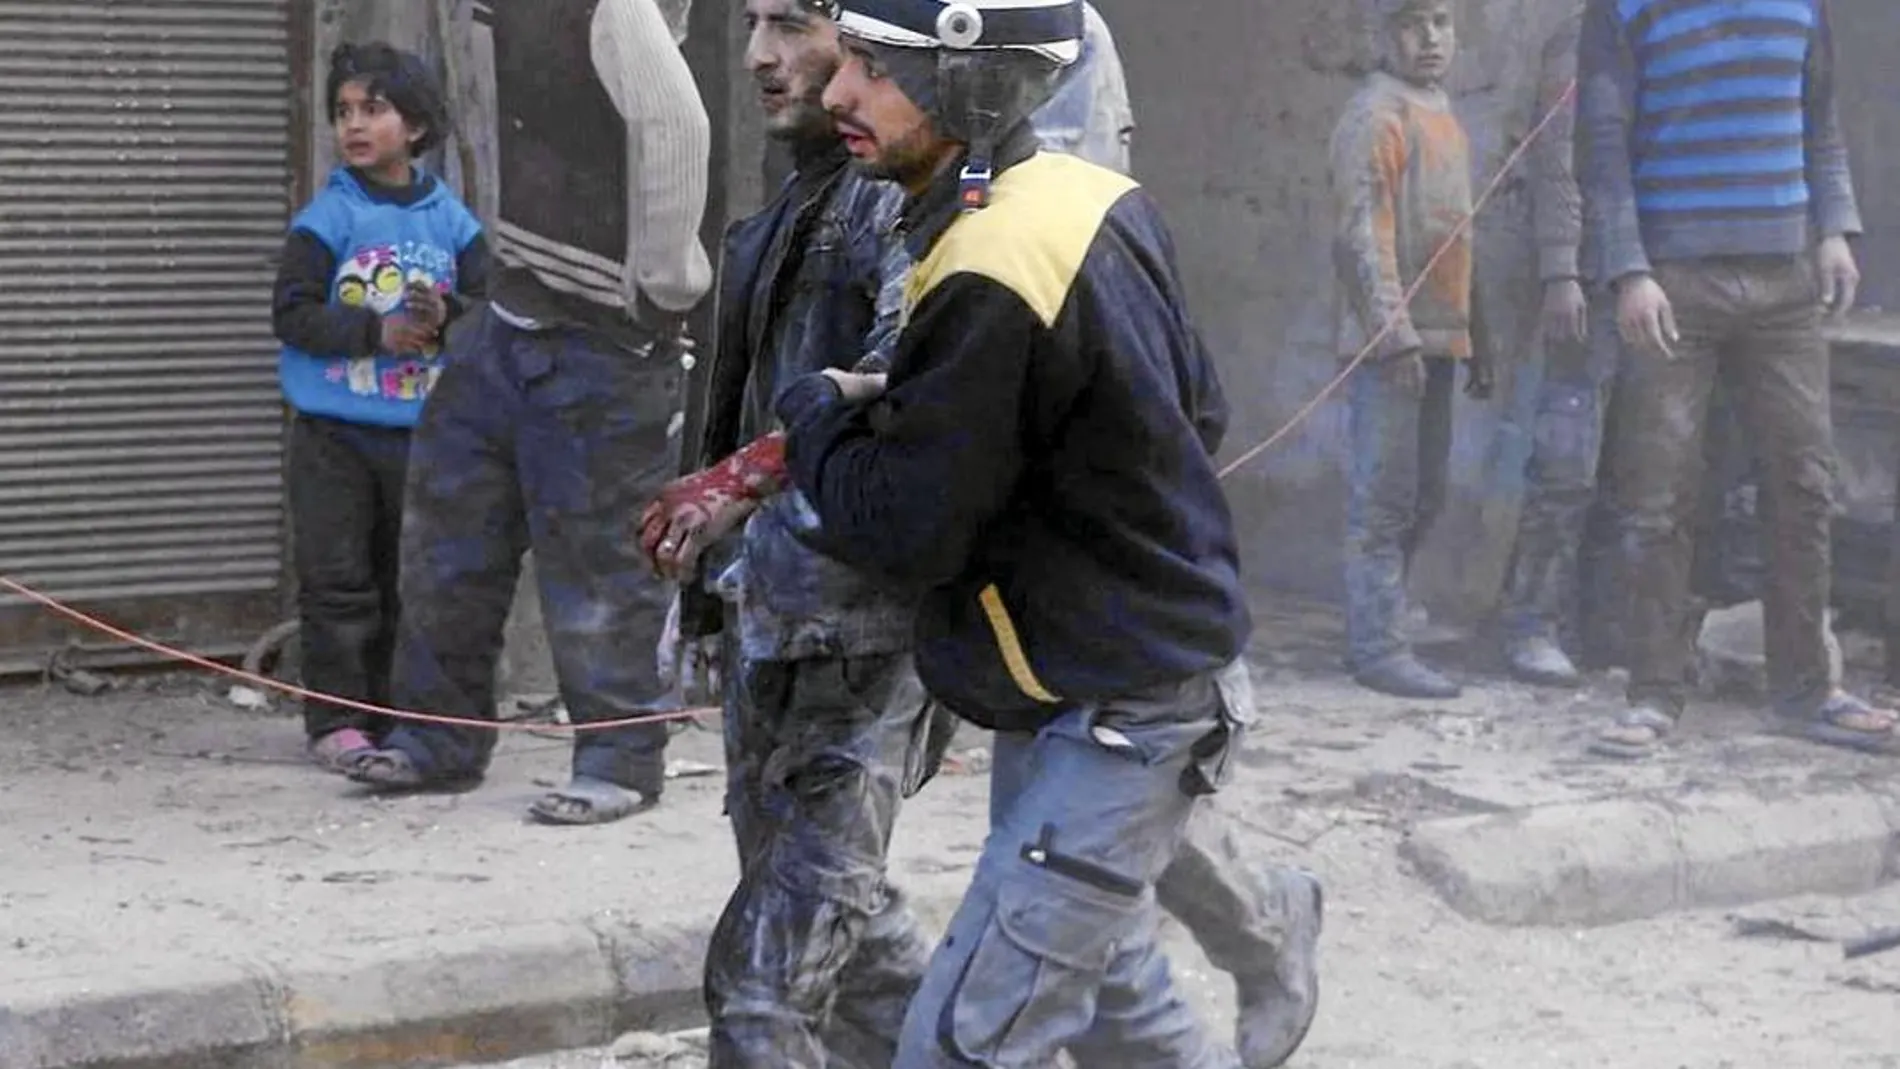 El régimen bombardeó el miércoles la localidad de Duma, cerca de Damasco, causando múltiples víctimas inocentes